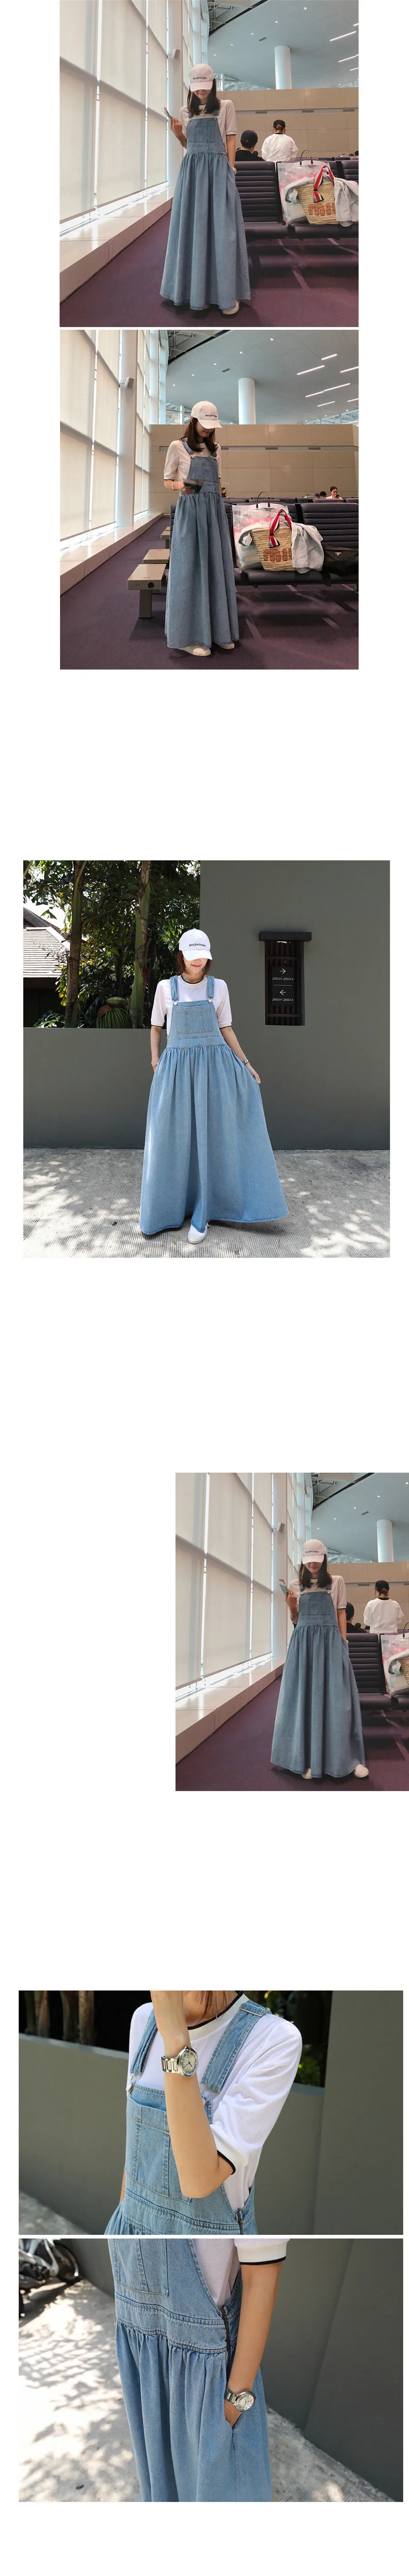 Весенне-осеннее джинсовое платье, женское джинсовое платье, сарафан, новое корейское издание, однотонное, без рукавов, на бретельках, с карманами, повседневное длинное платье